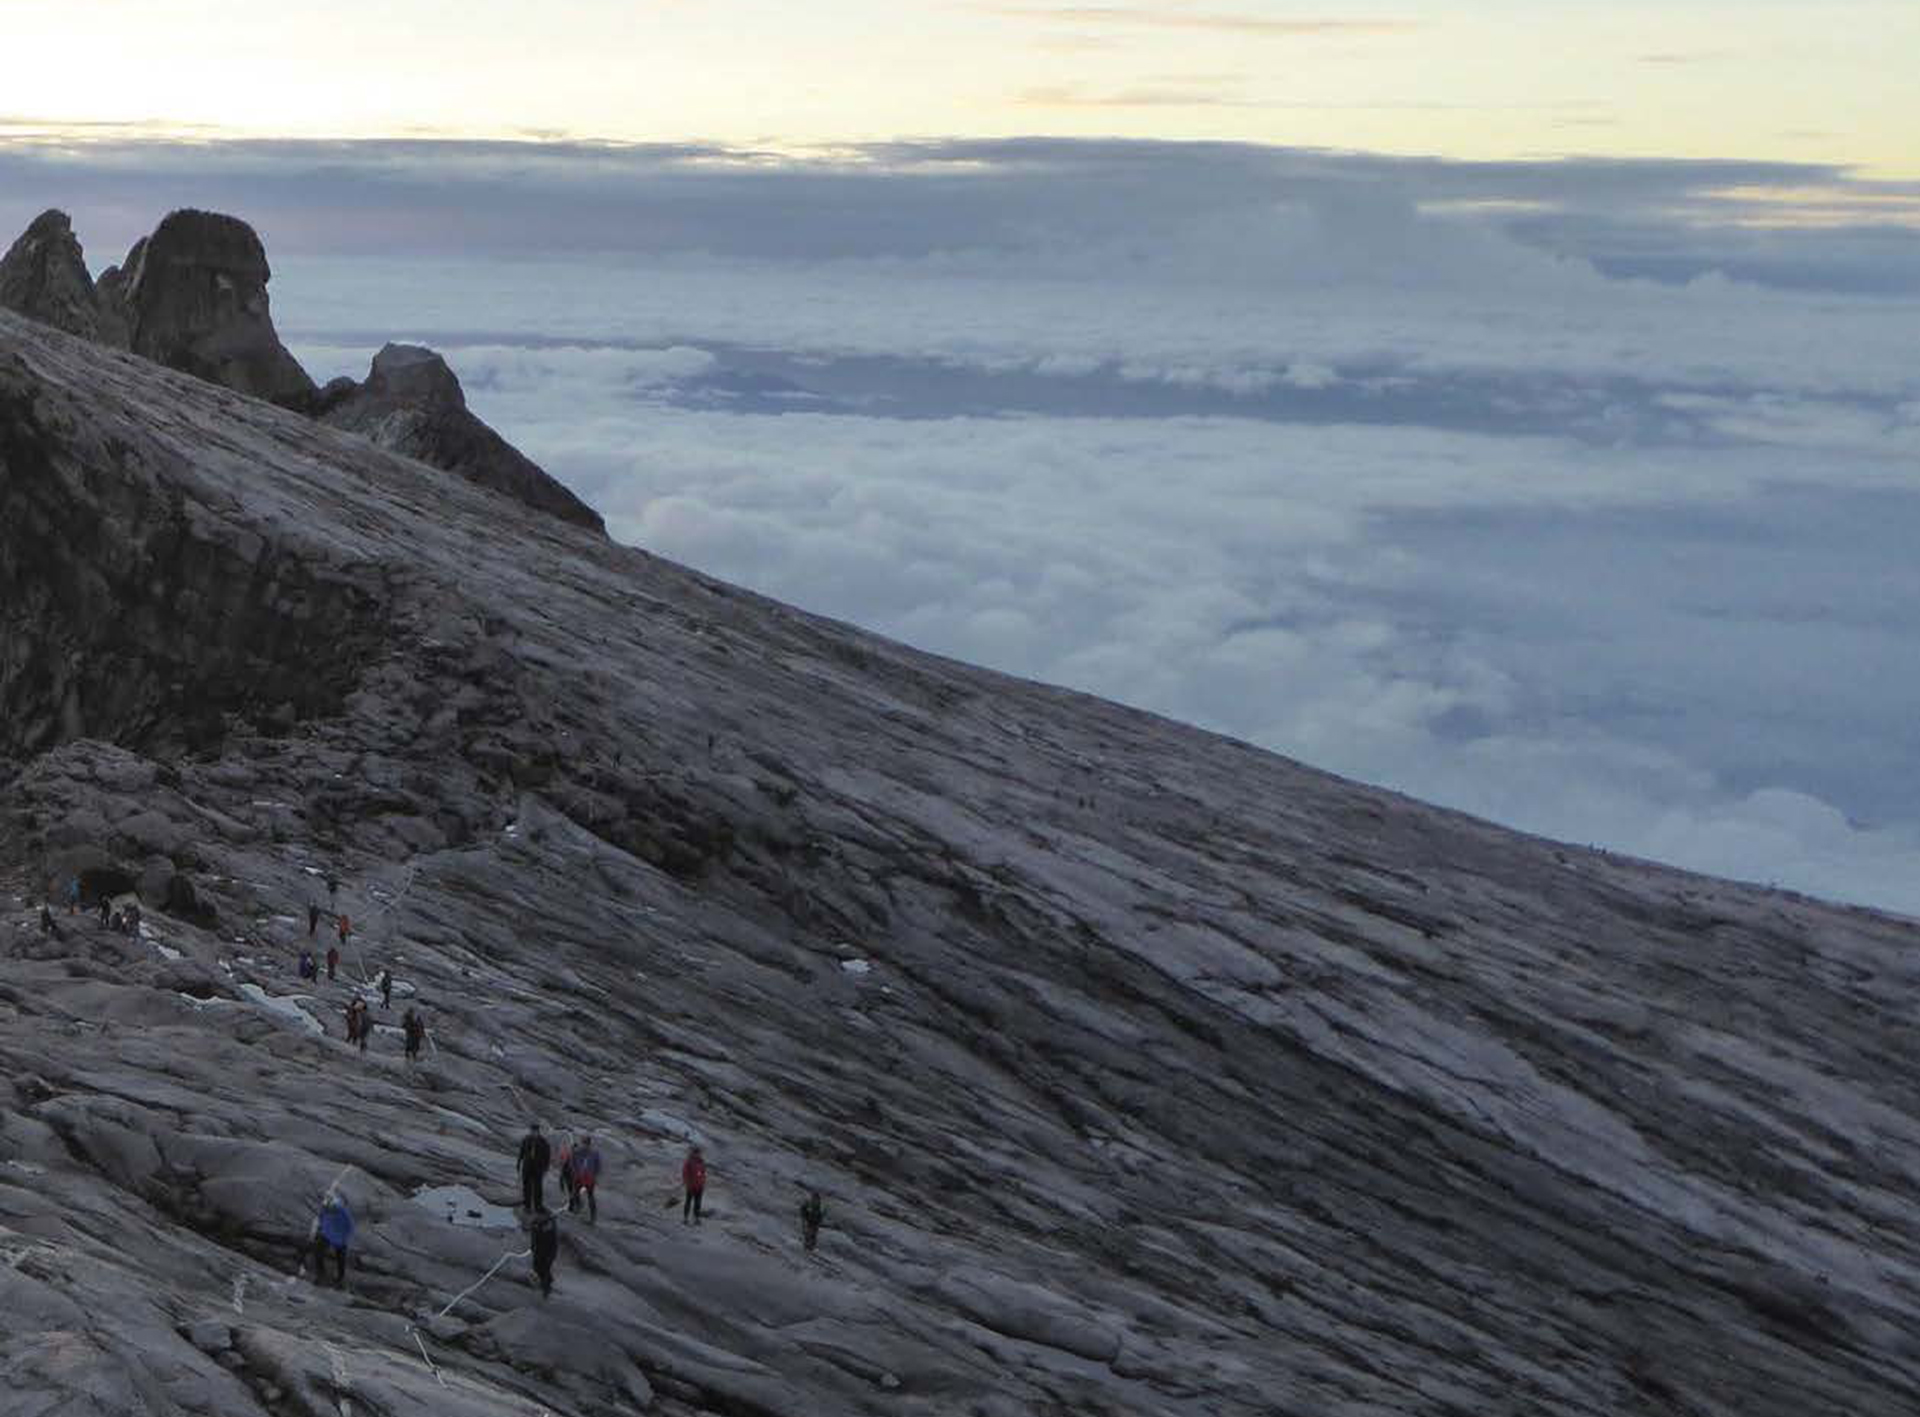 A ridge near the summit of Mount Kinabalu in northern Borneo